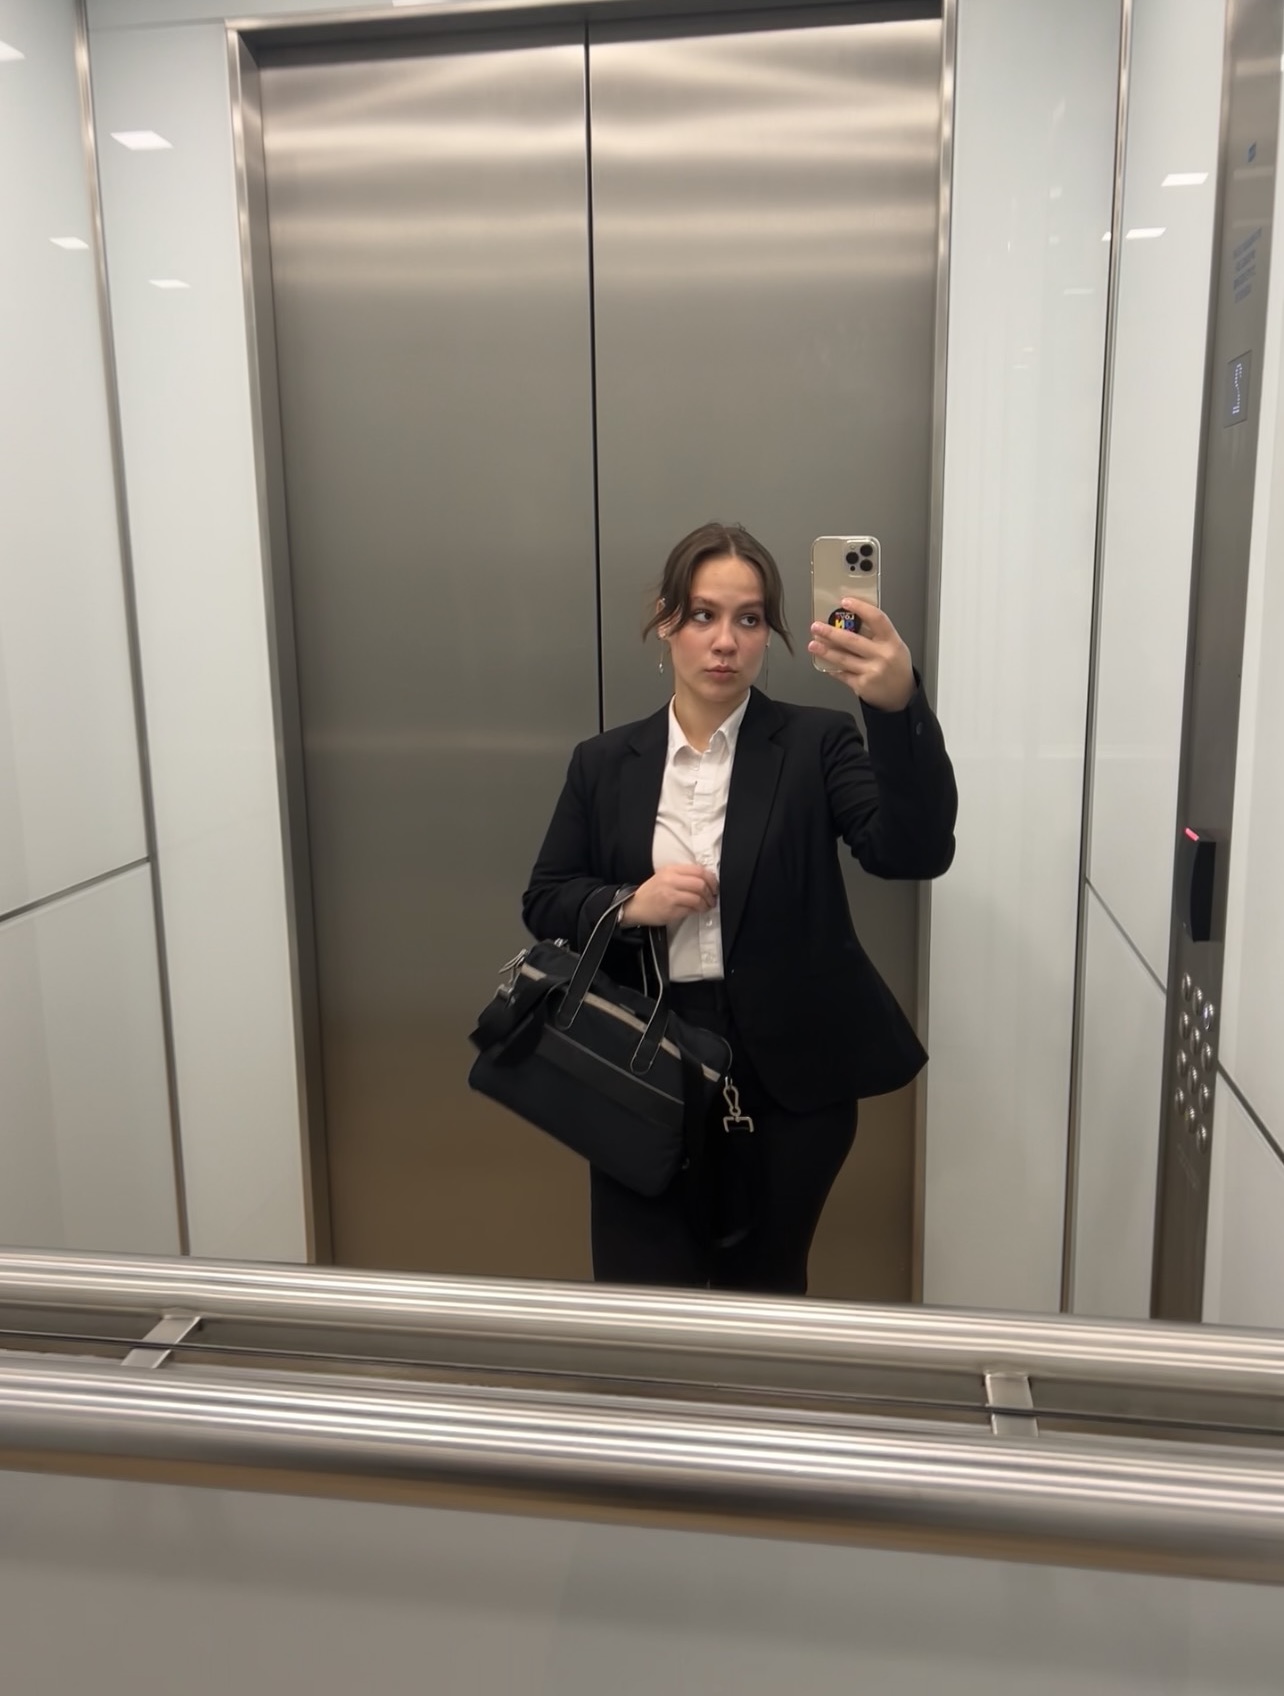 Markha Mezhieva in an elevator